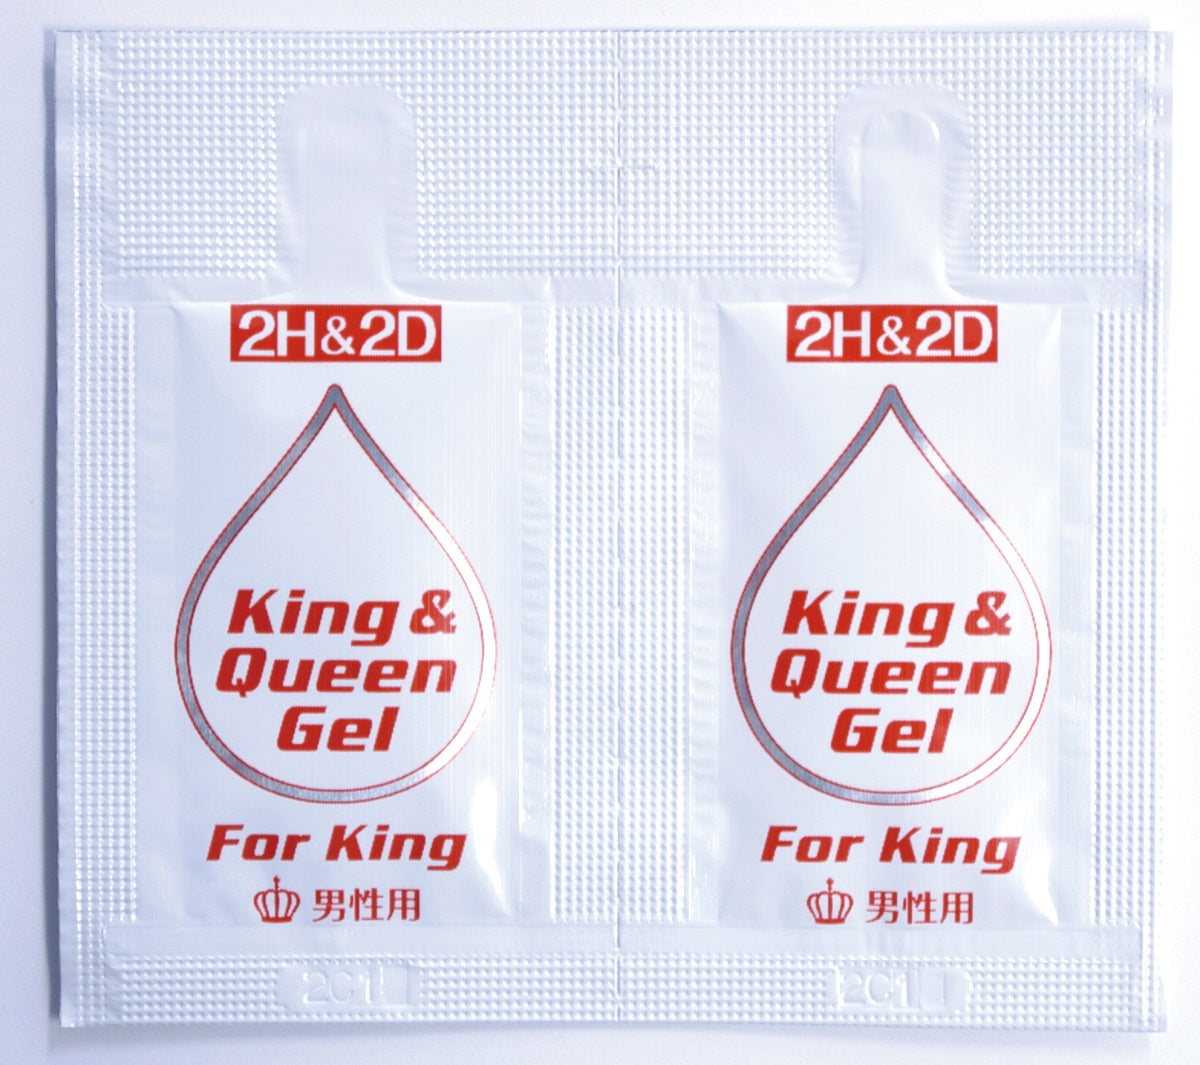 2H&2D King & Queen Gel (for men)